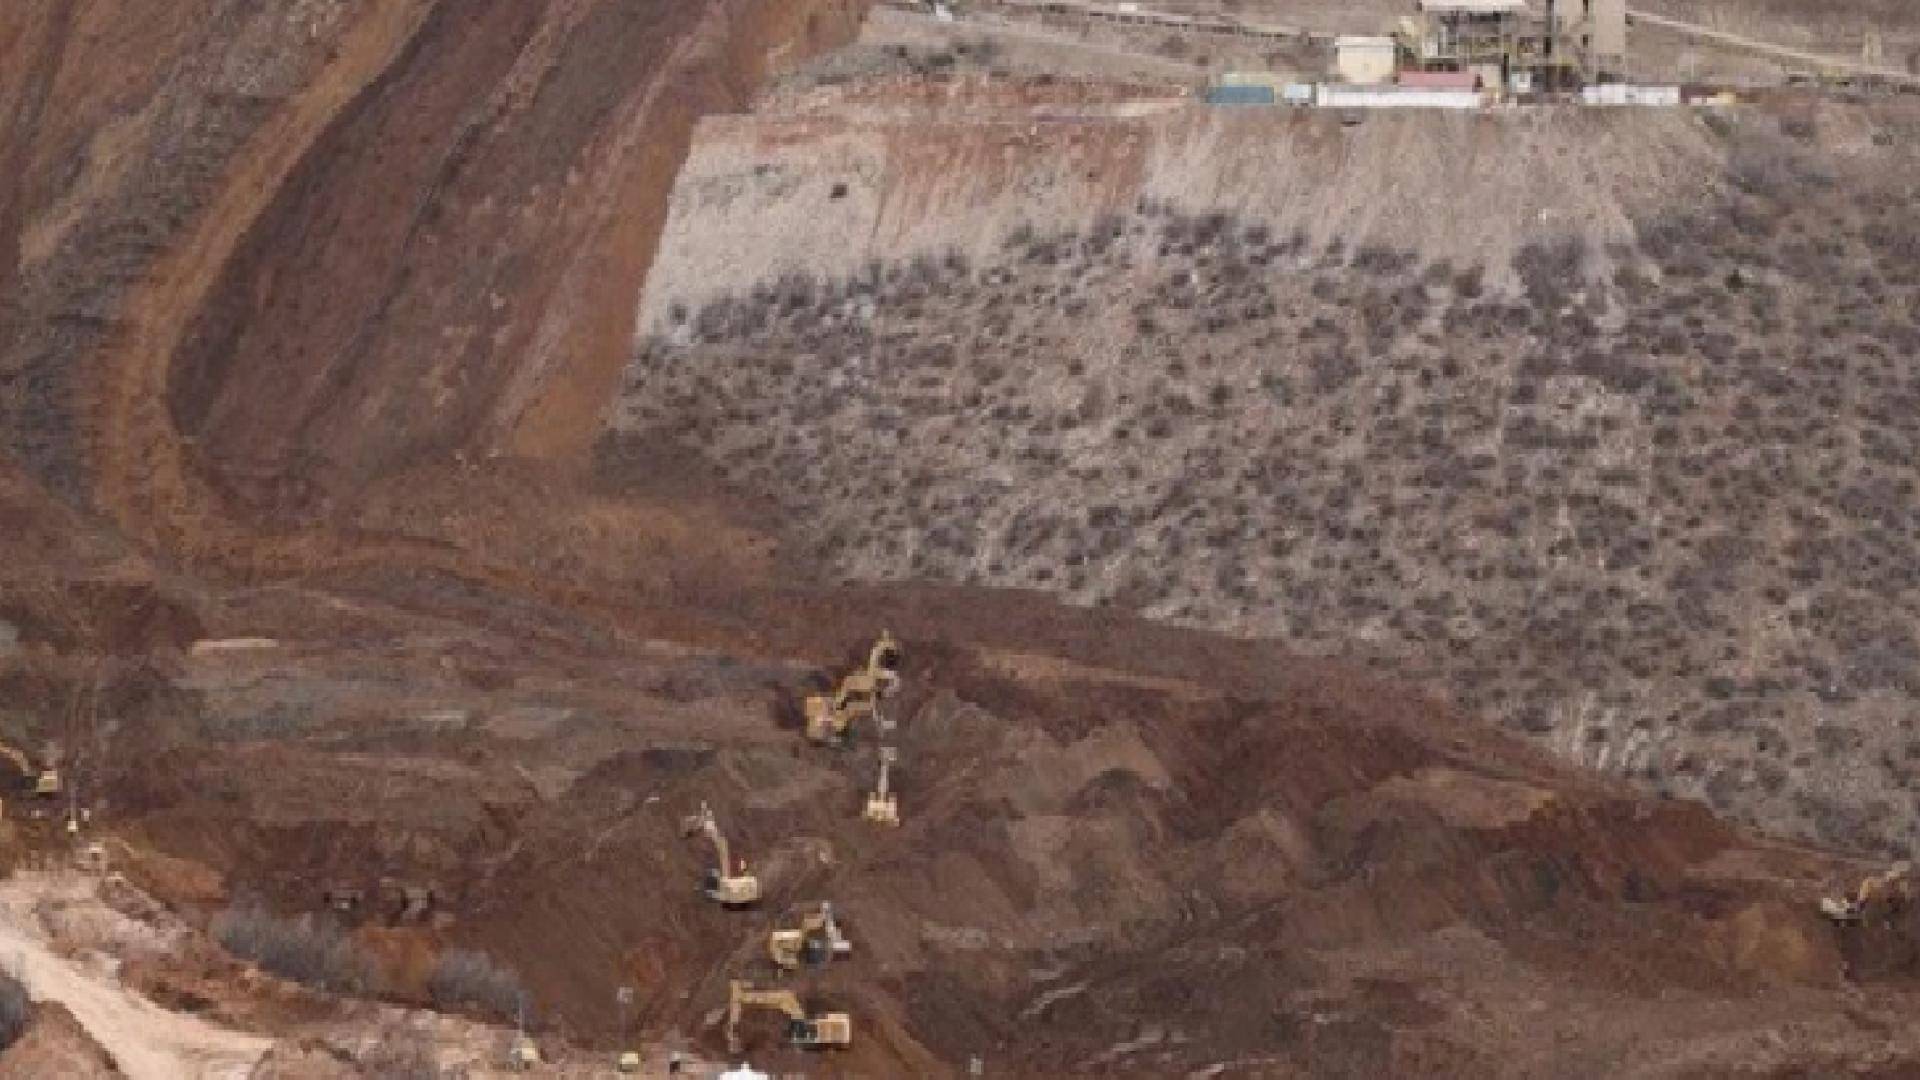 İliç maden faciası; 9 işçi hâlâ toprak altında